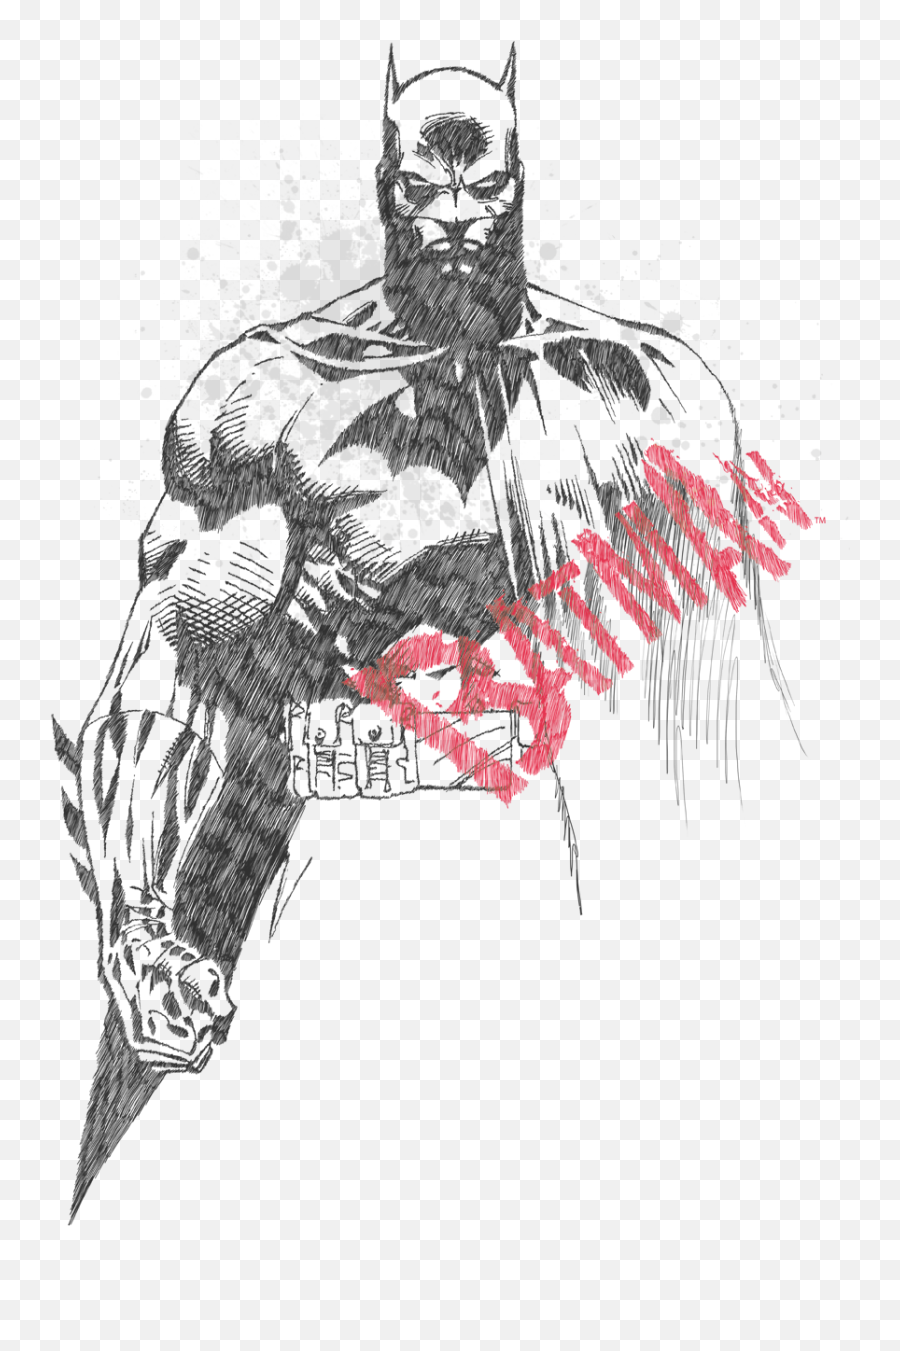 Superman Symbol Logo Vectors Cnc Pinterest Batman  Sketch  Free  Transparent PNG Download  PNGkey